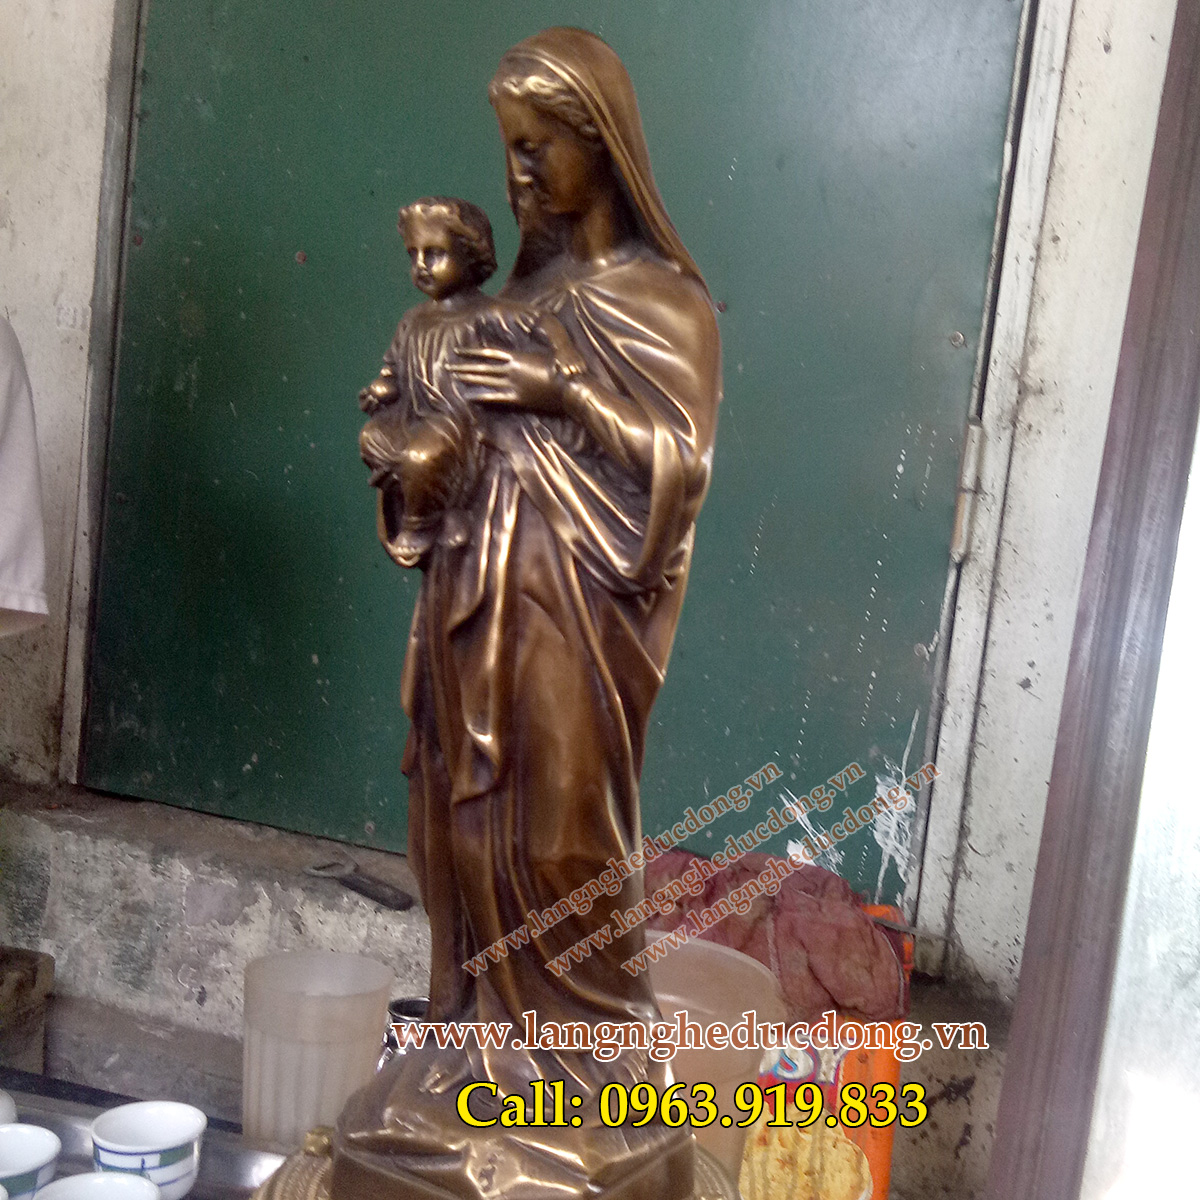 Tượng đức mẹ maria bằng đồng 40cm, đức mẹ bồng con